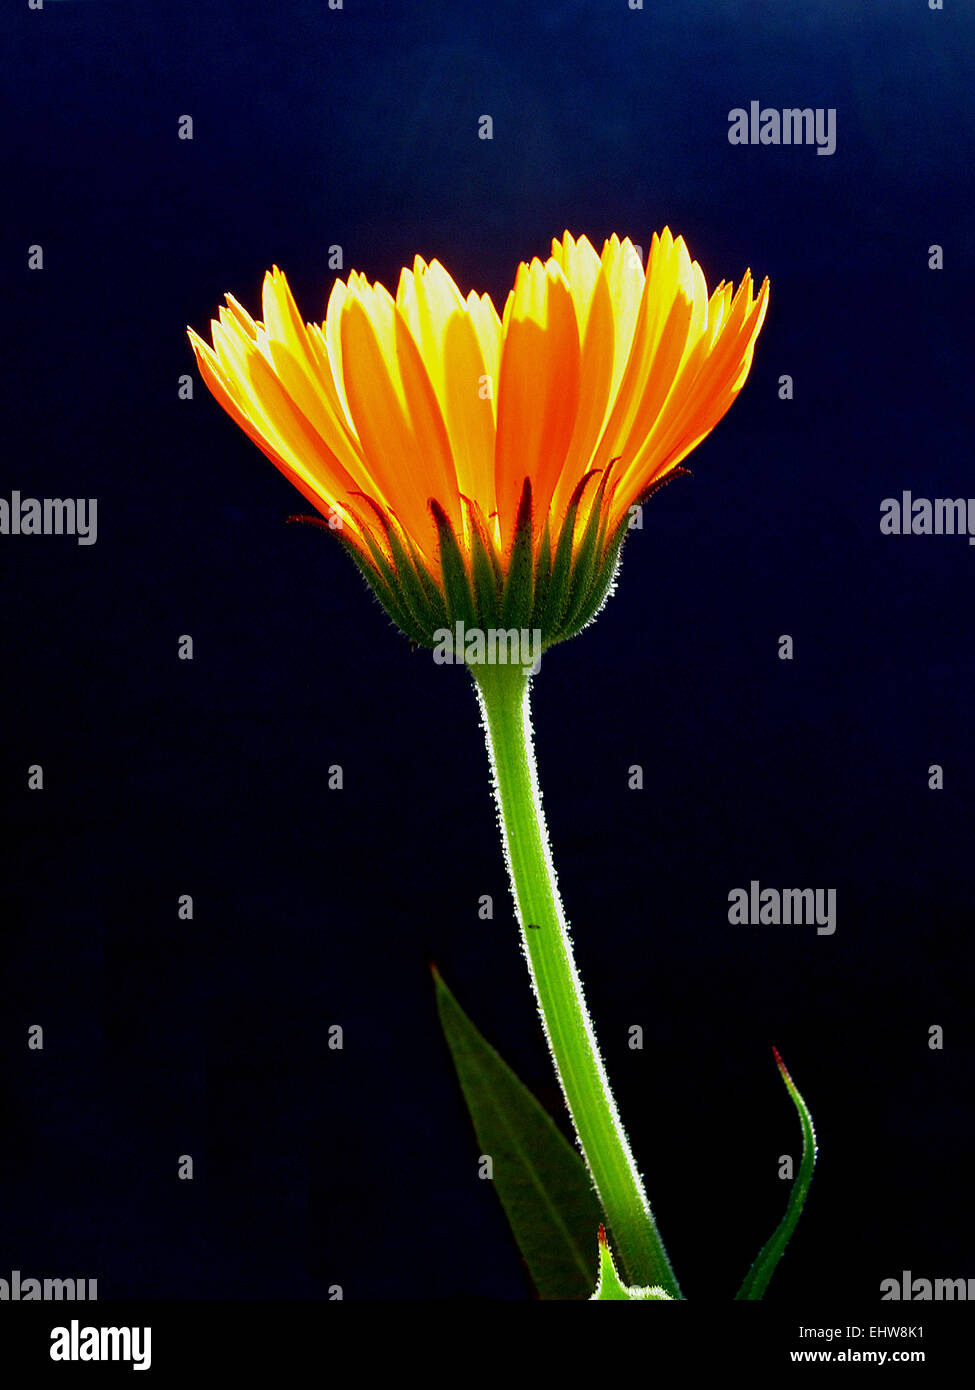 garden marigold Stock Photo